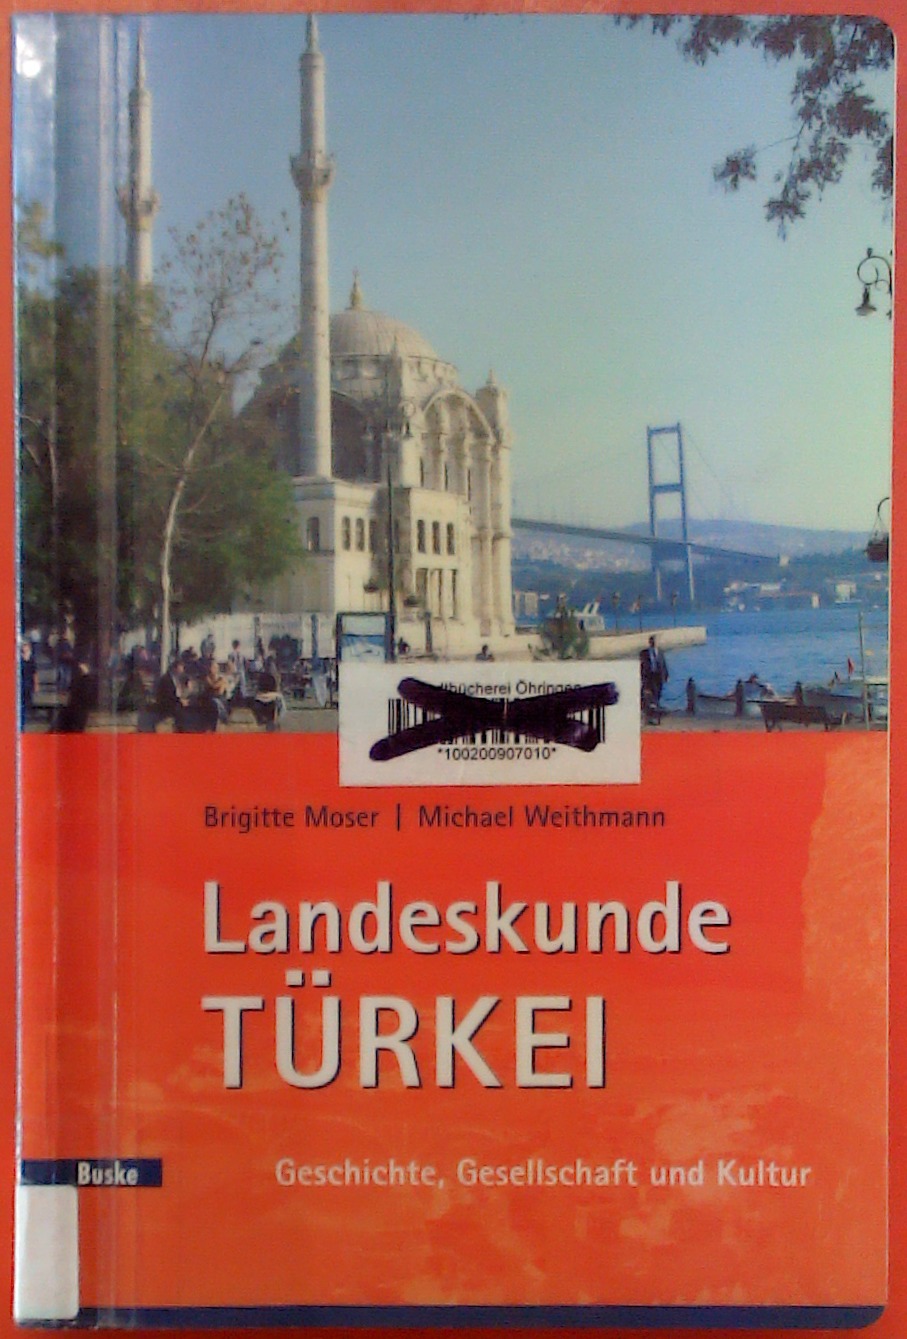 Landeskunde Türkei. Geschichte, Gesellschaft und Kultur - Brigitte Moser, Michael Weithmann